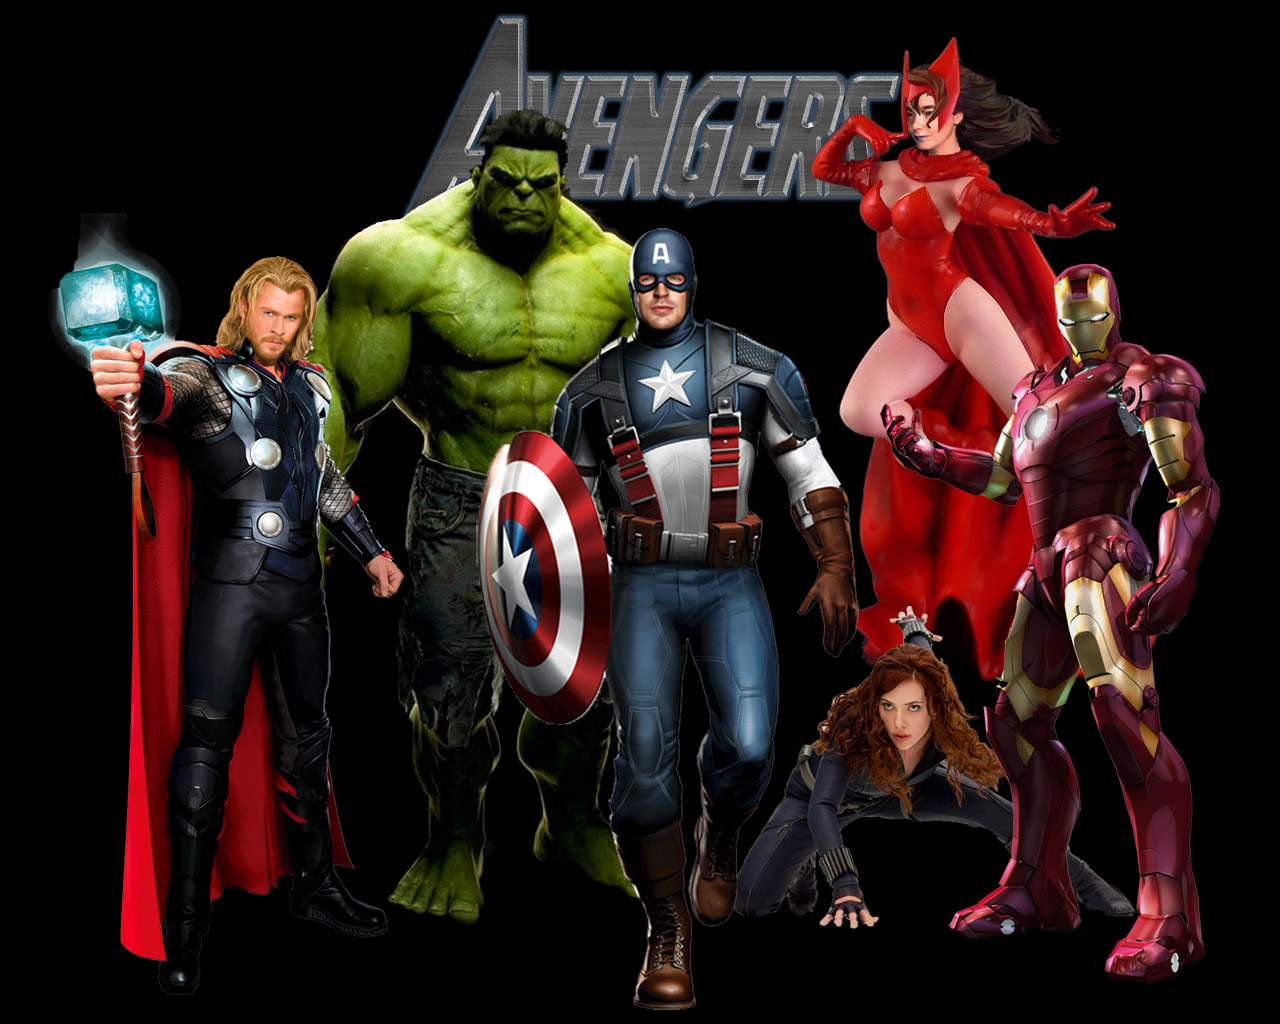 The+avengers+movie+marvel